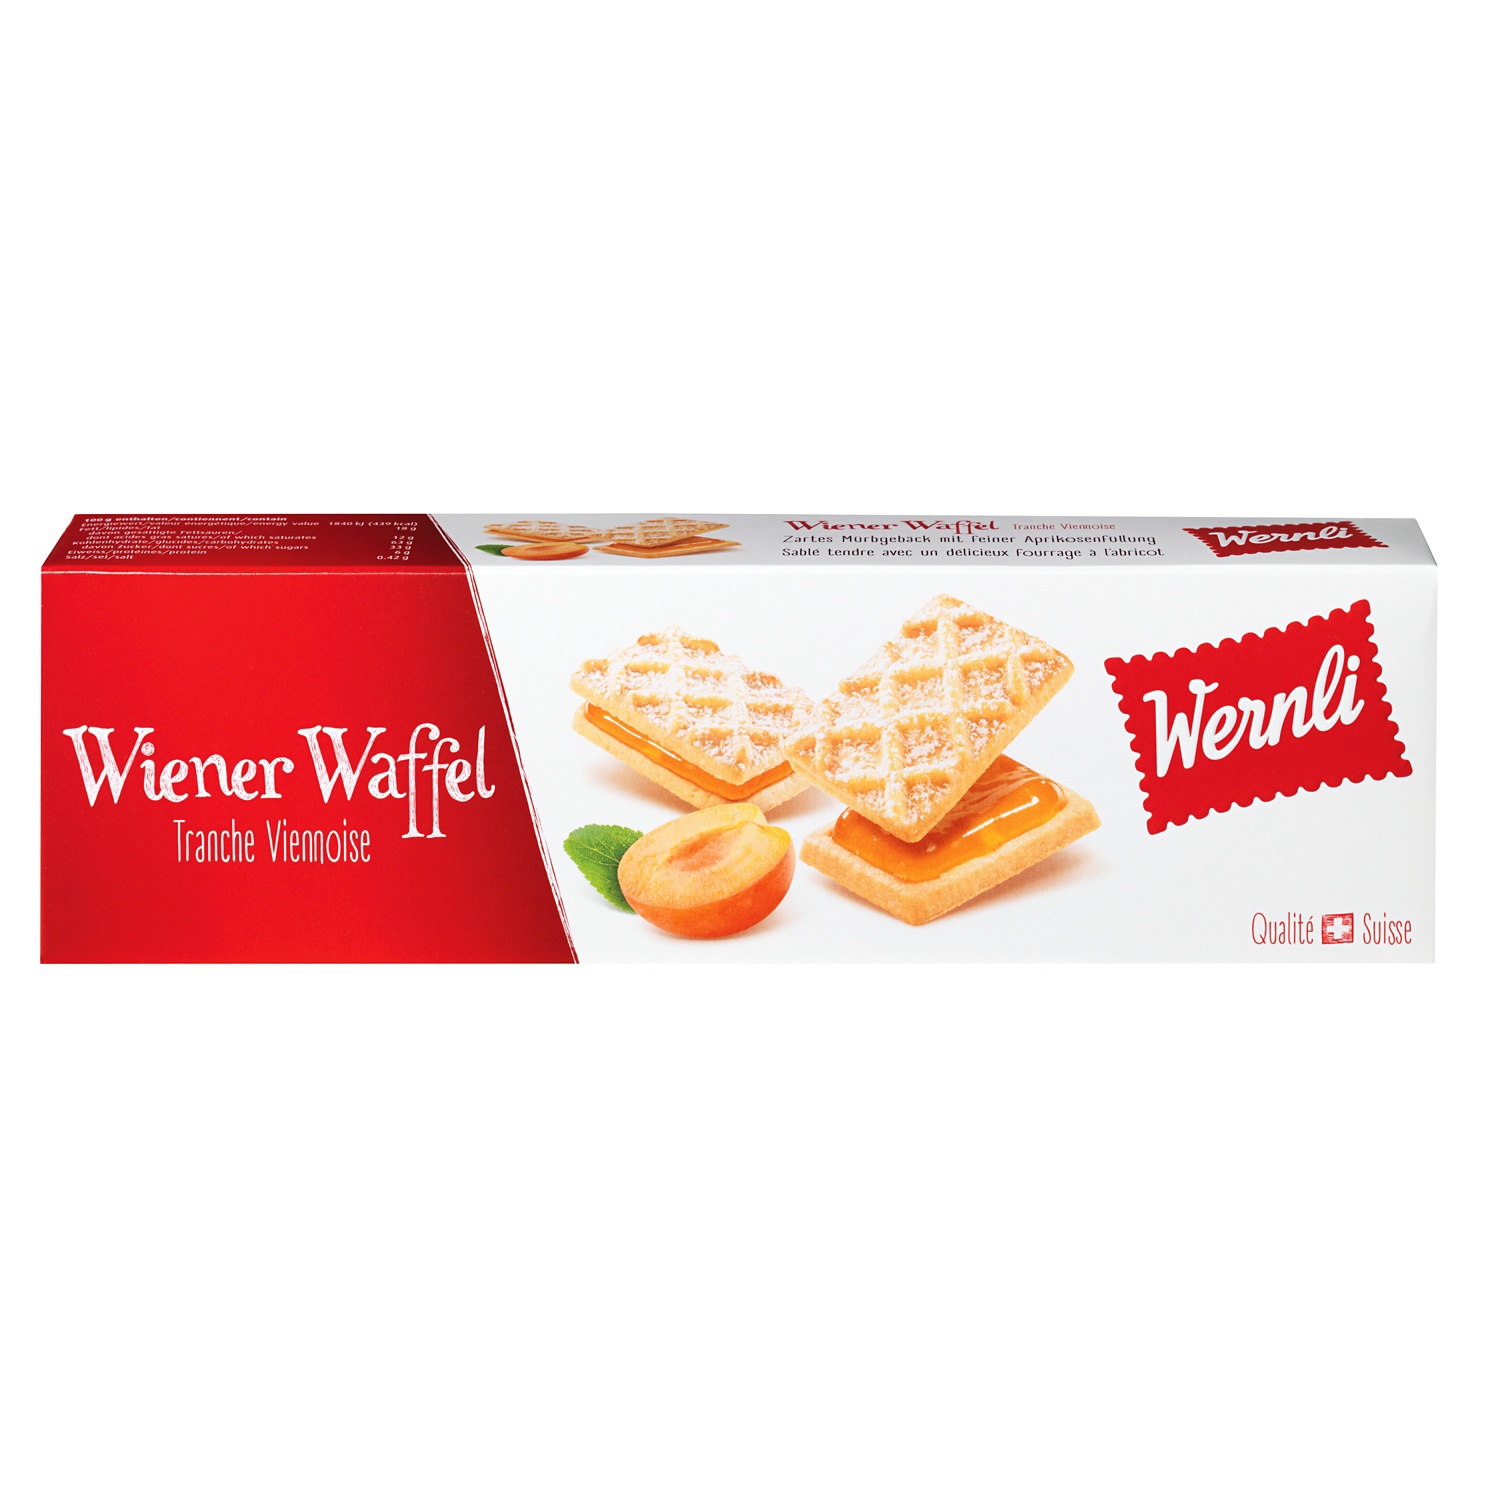 WERNLI Biscottini Wiener Waffel